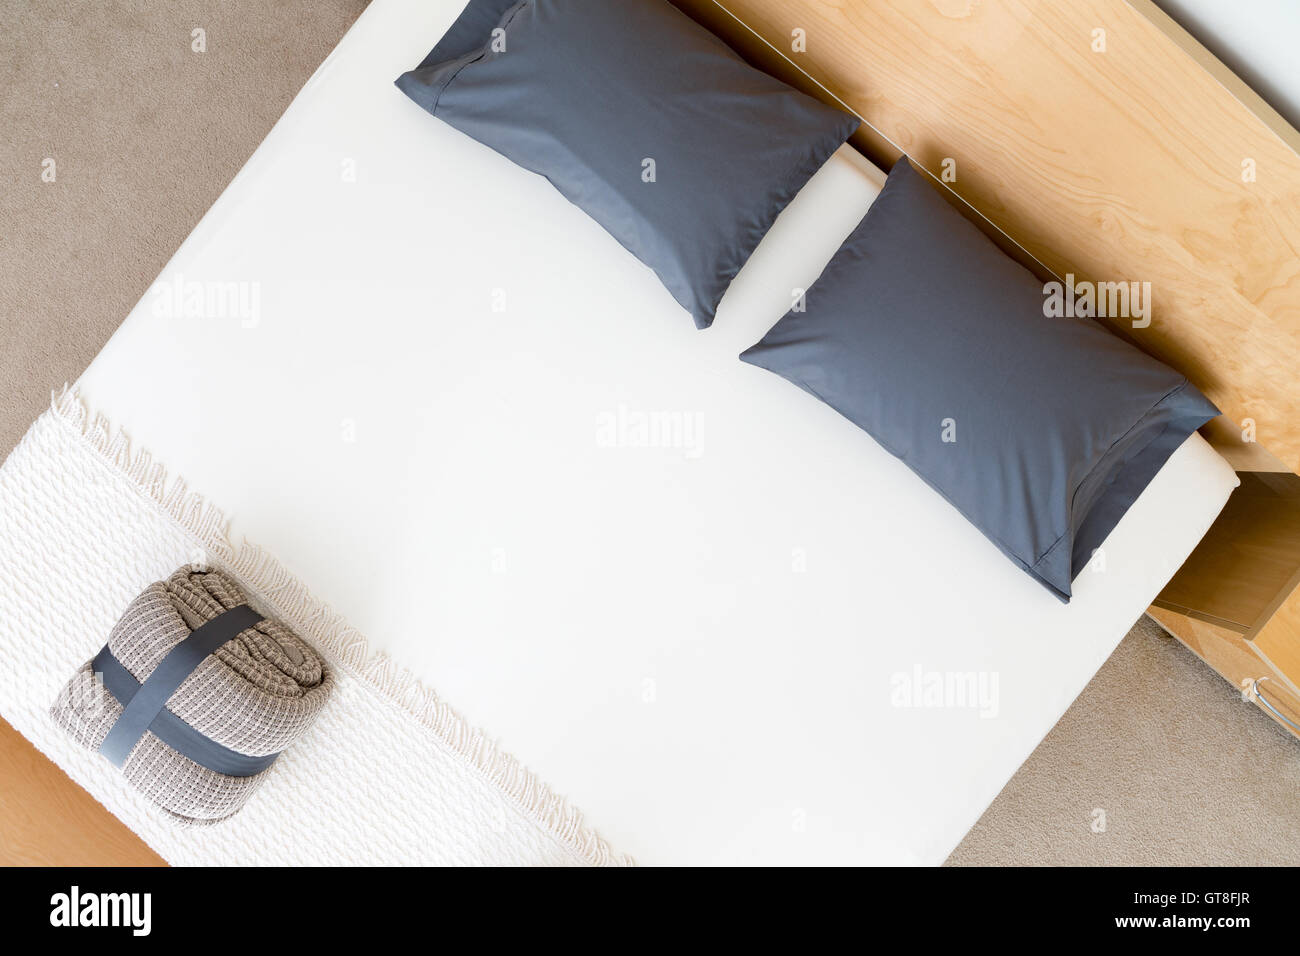 Draufsicht auf ein ordentlich King size-Bett in einem Hotel oder Haus mit schwarzen Kissen auf einem weißen Bettdecke mit einem gefalteten und geschnallt r Stockfoto